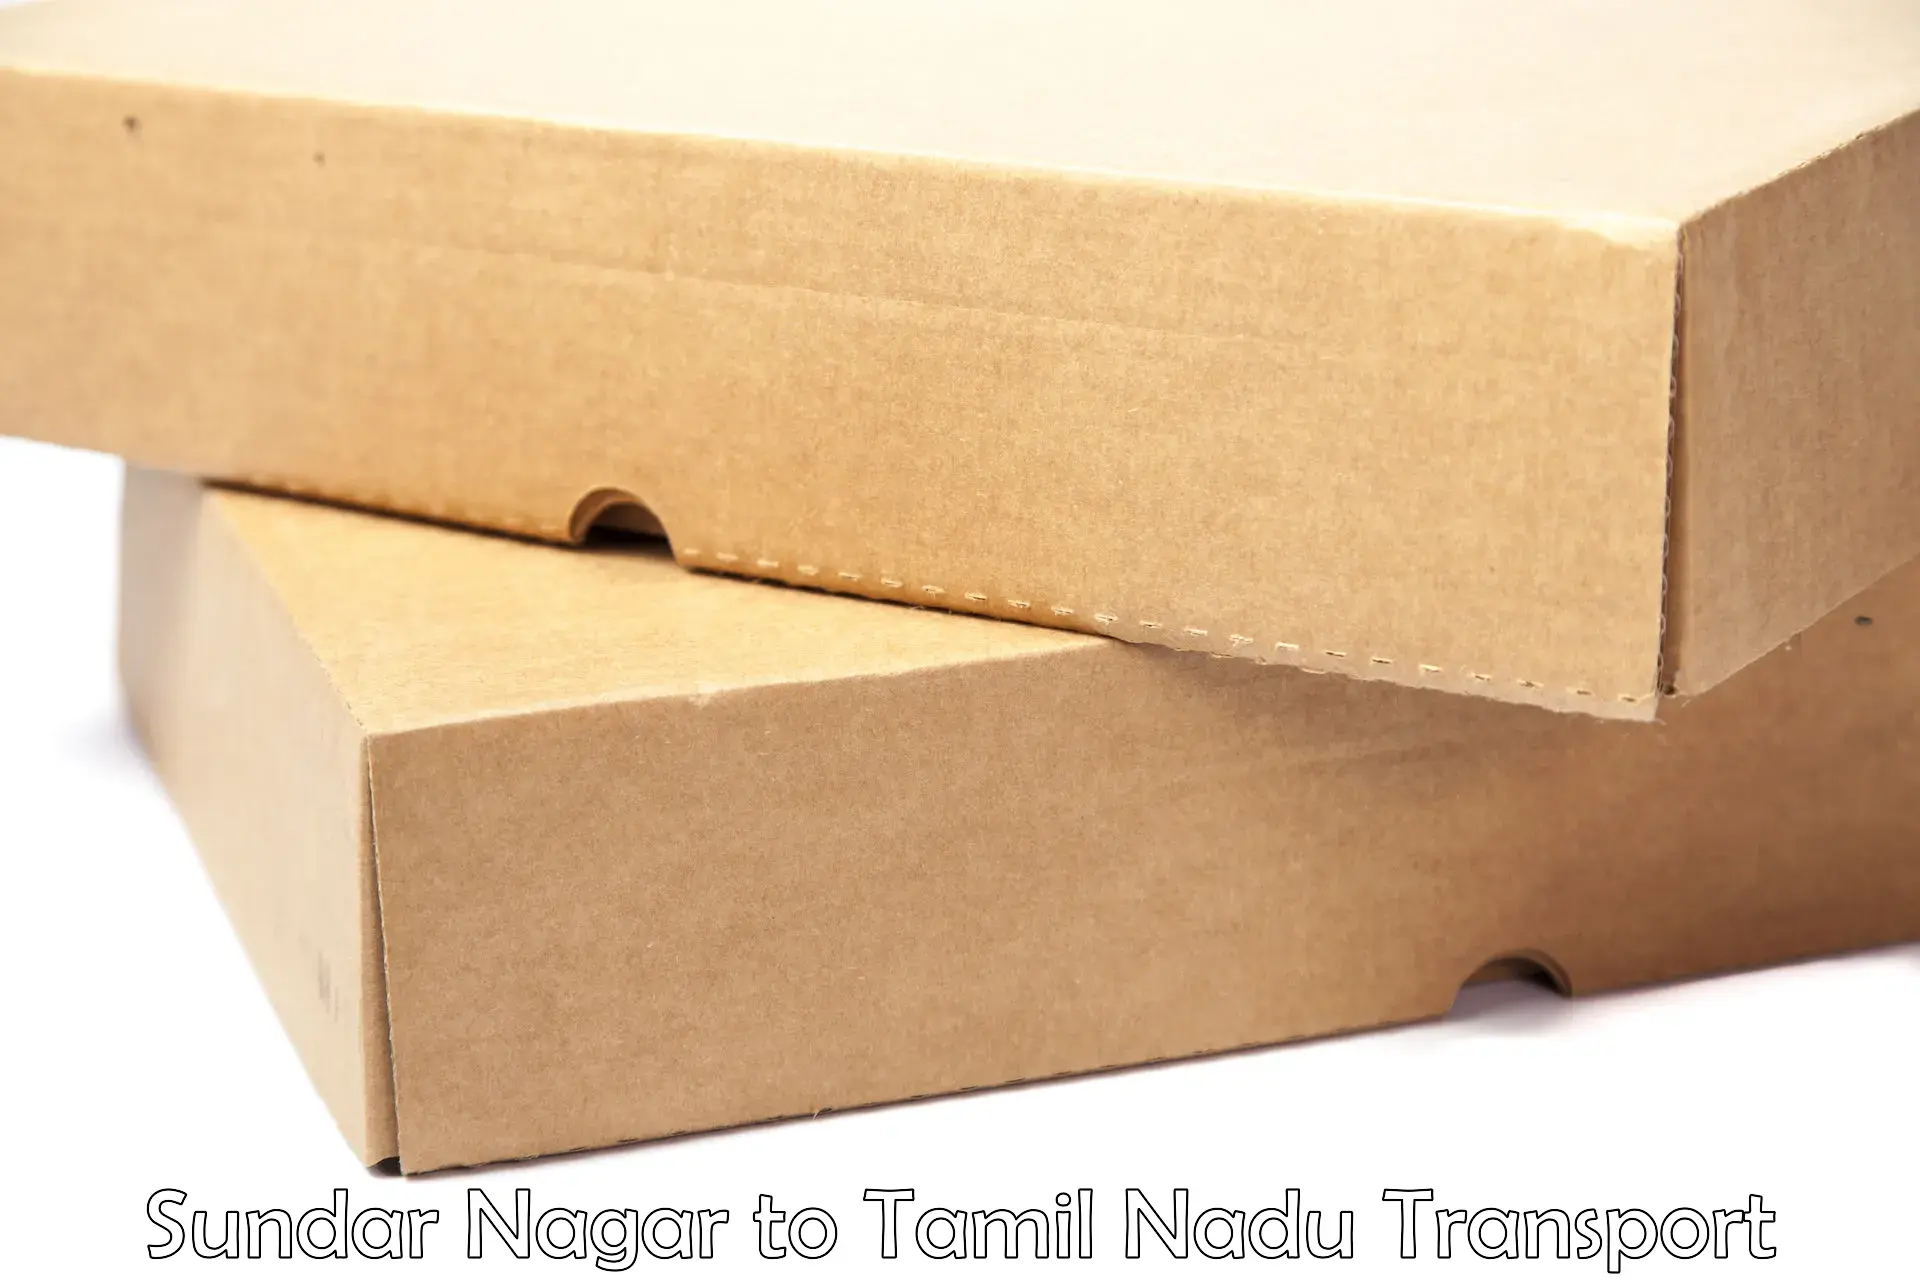 Package delivery services Sundar Nagar to Hosur